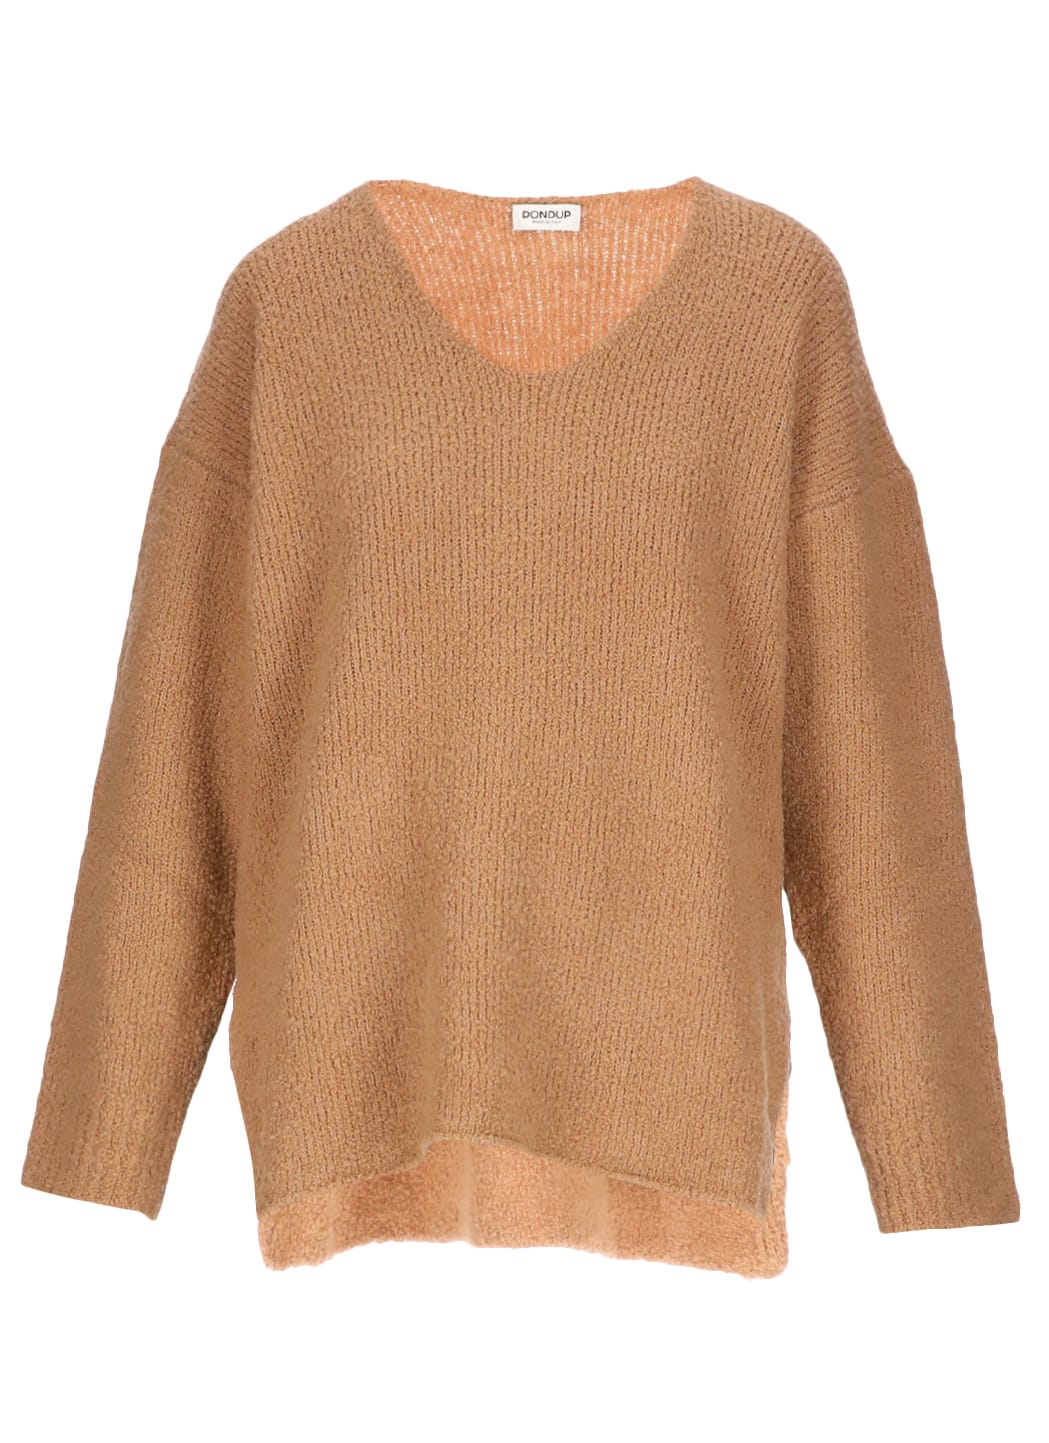 Dondup Wool Blend Sweater